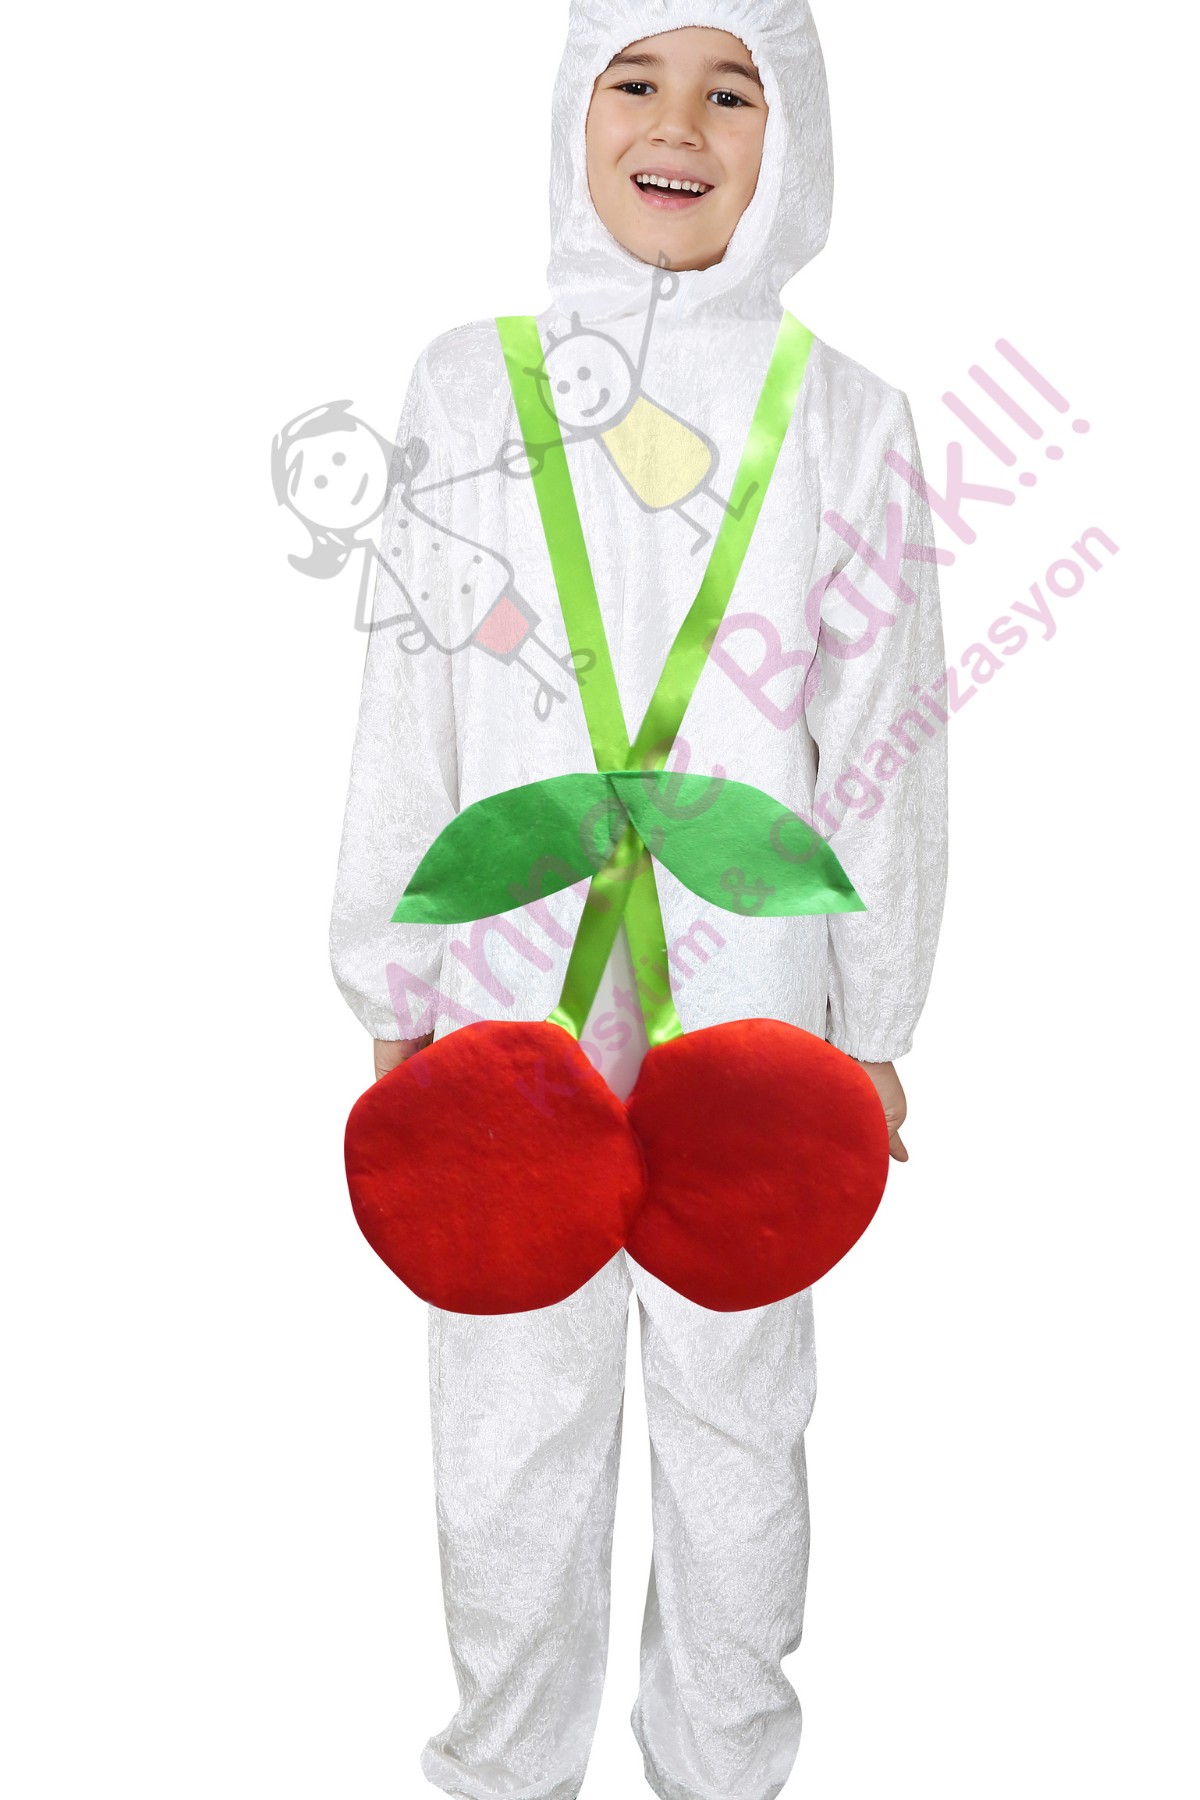 Kiraz Kostümü, Kiraz Çocuk Kostümü, Meyve ve Gıda Kostümleri, Hızlı Kargo